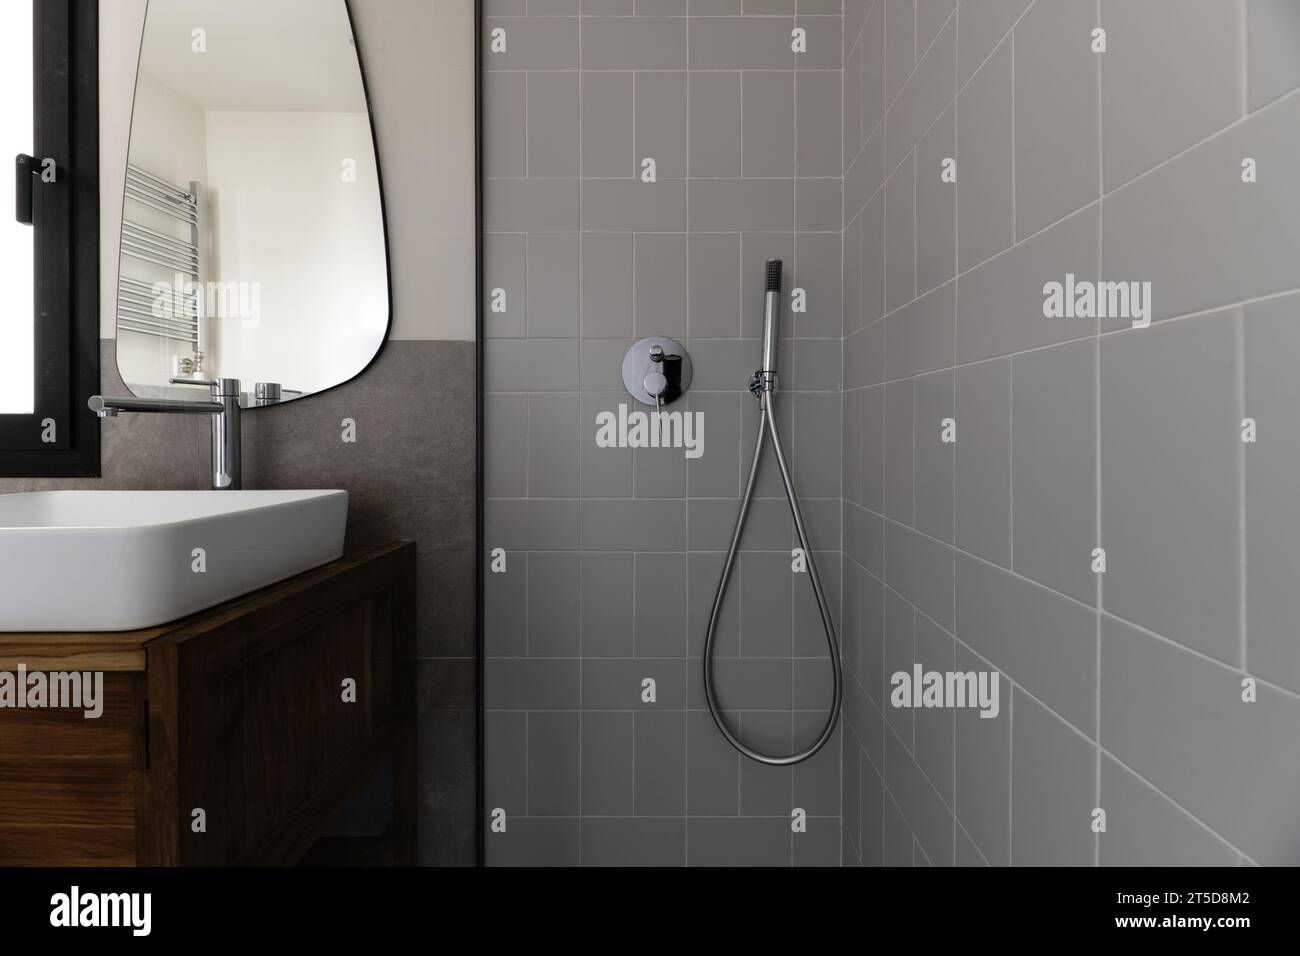 Kleines, modernes Badezimmer mit grauen Fliesen in Steinoptik, Spiegel an der Wand, weißes Porzellanwaschbecken, das über Holzschrank auskragt, Duschkabine mit gla Stockfoto